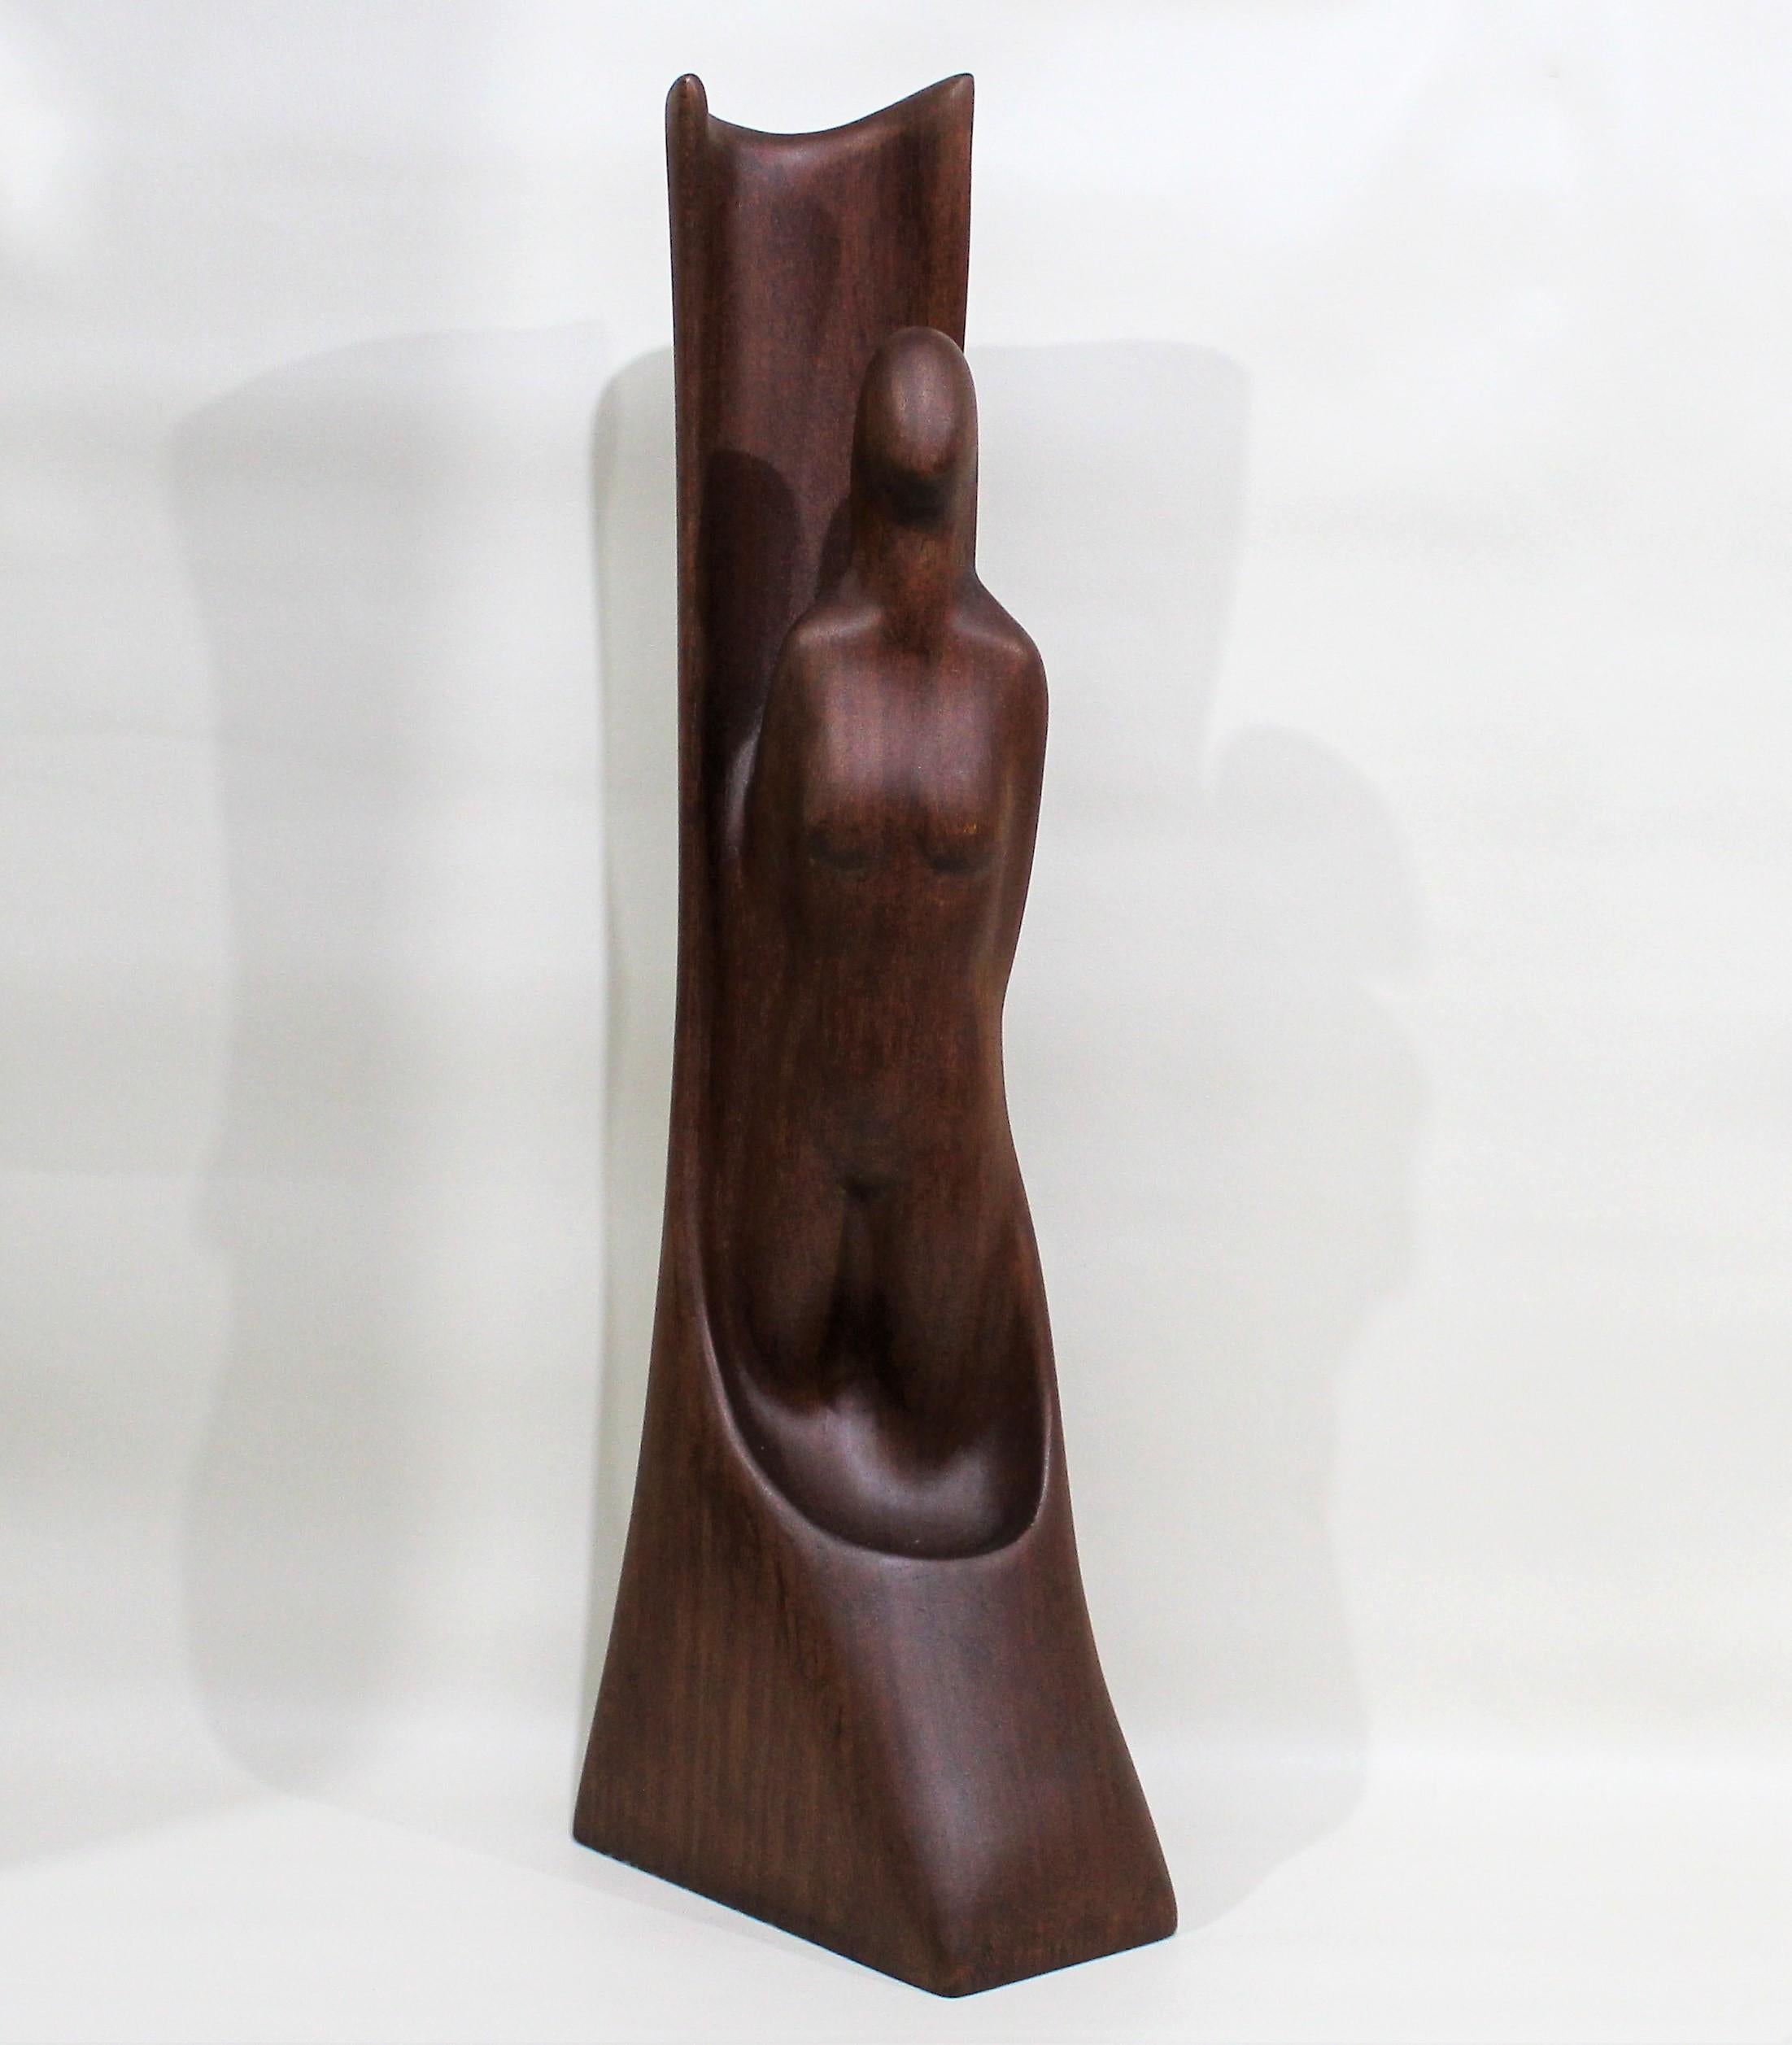 Minimalist teak wood nude woman sculpture.